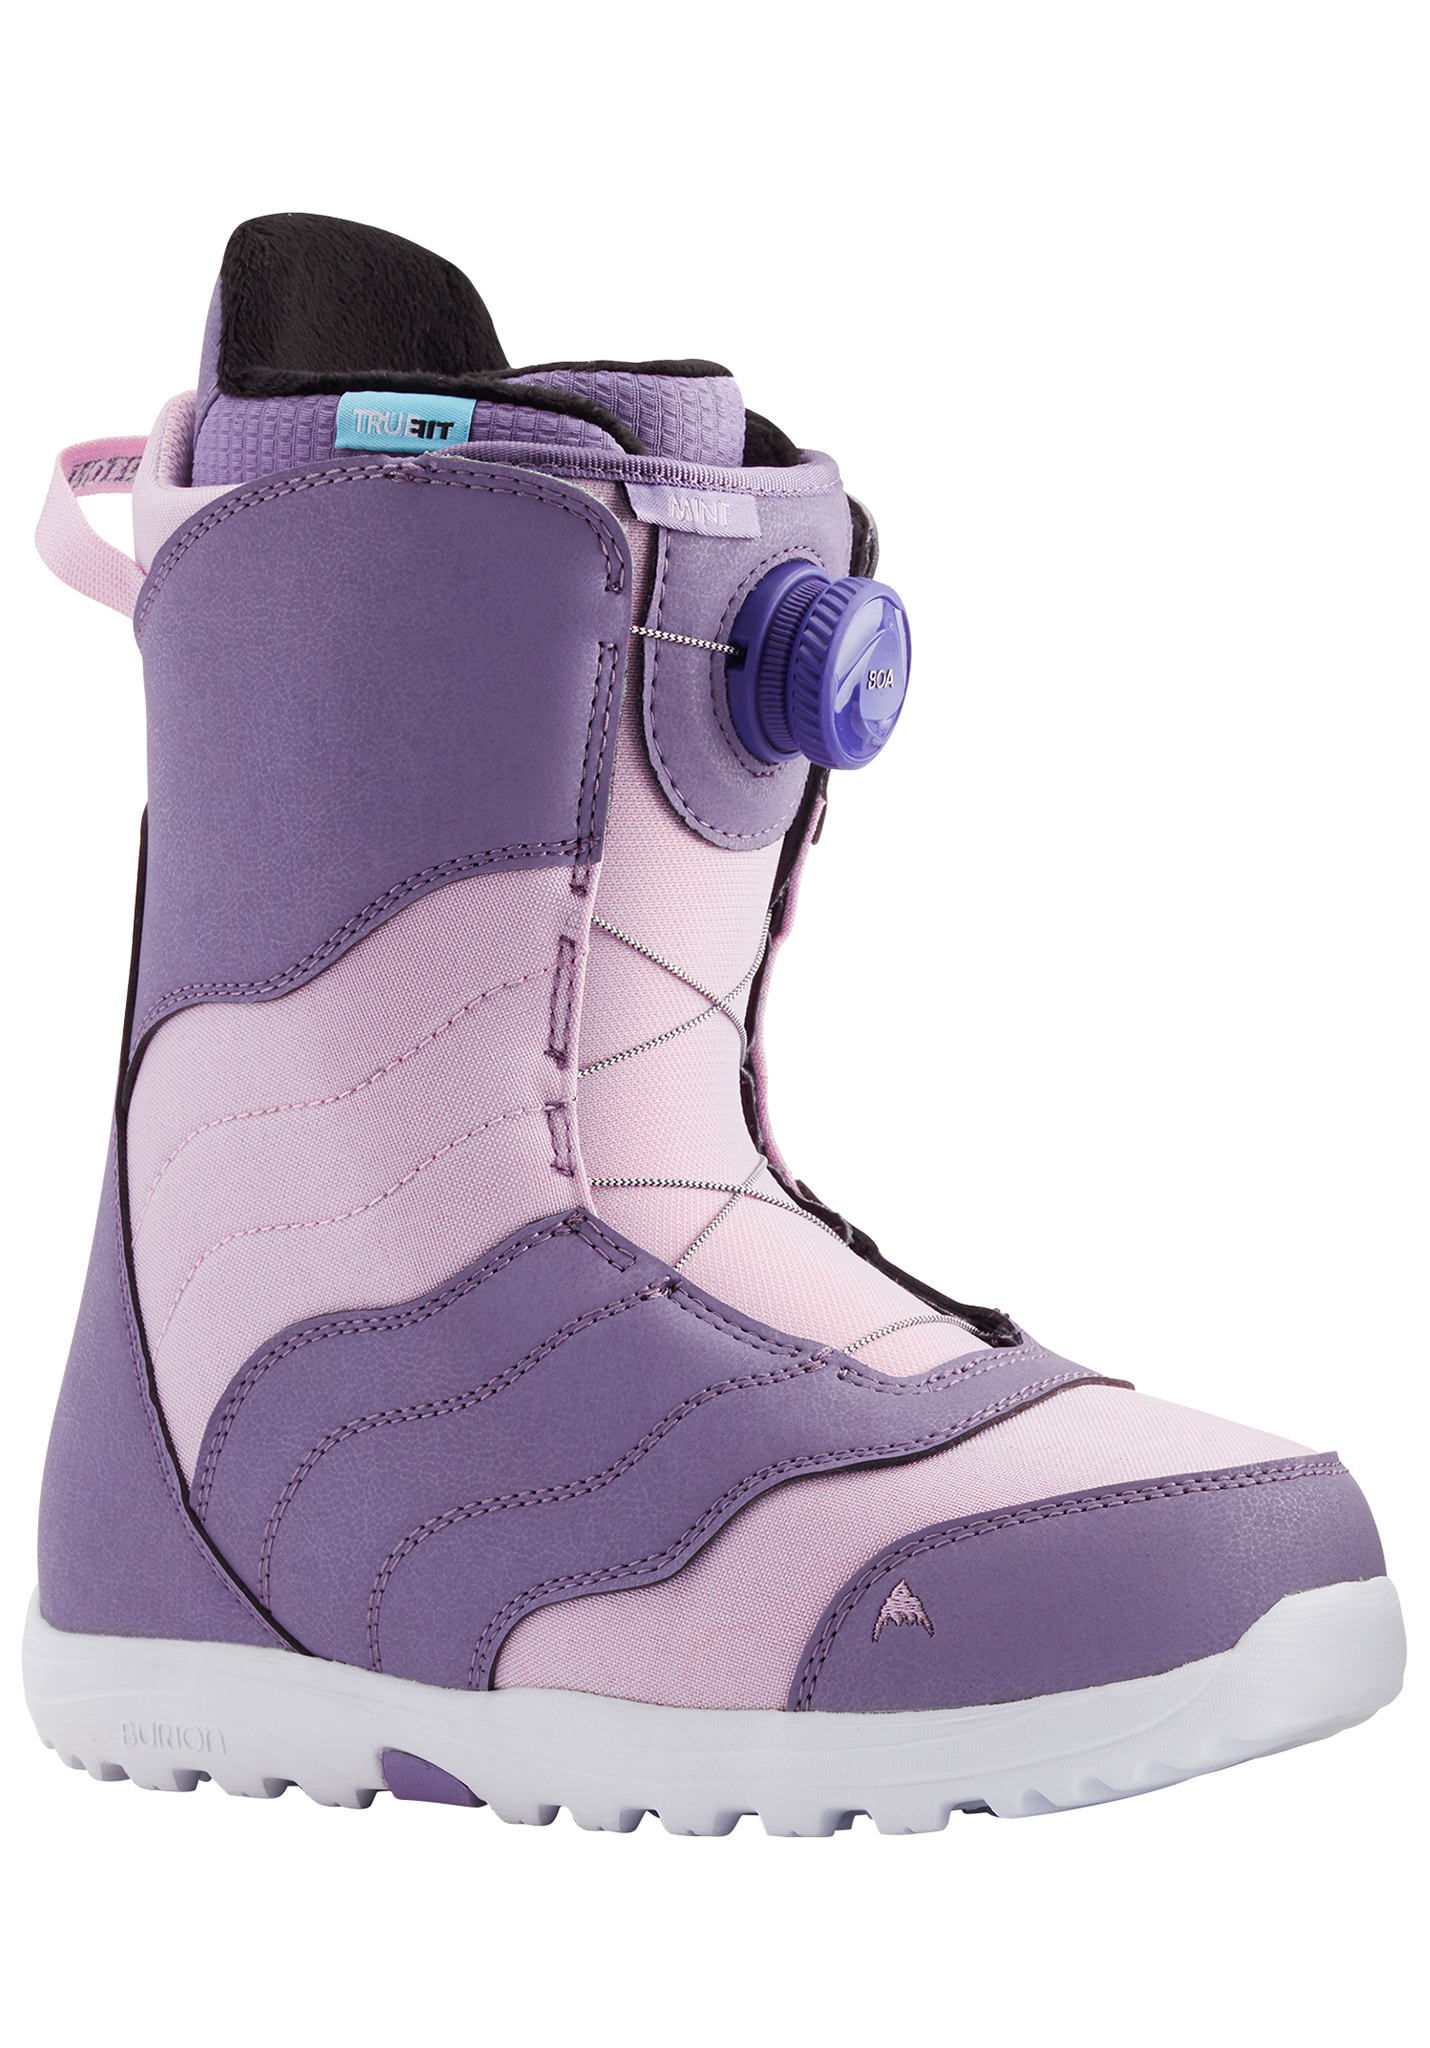 Burton Mint Boa Snowboard Boots lila/lavendel 38